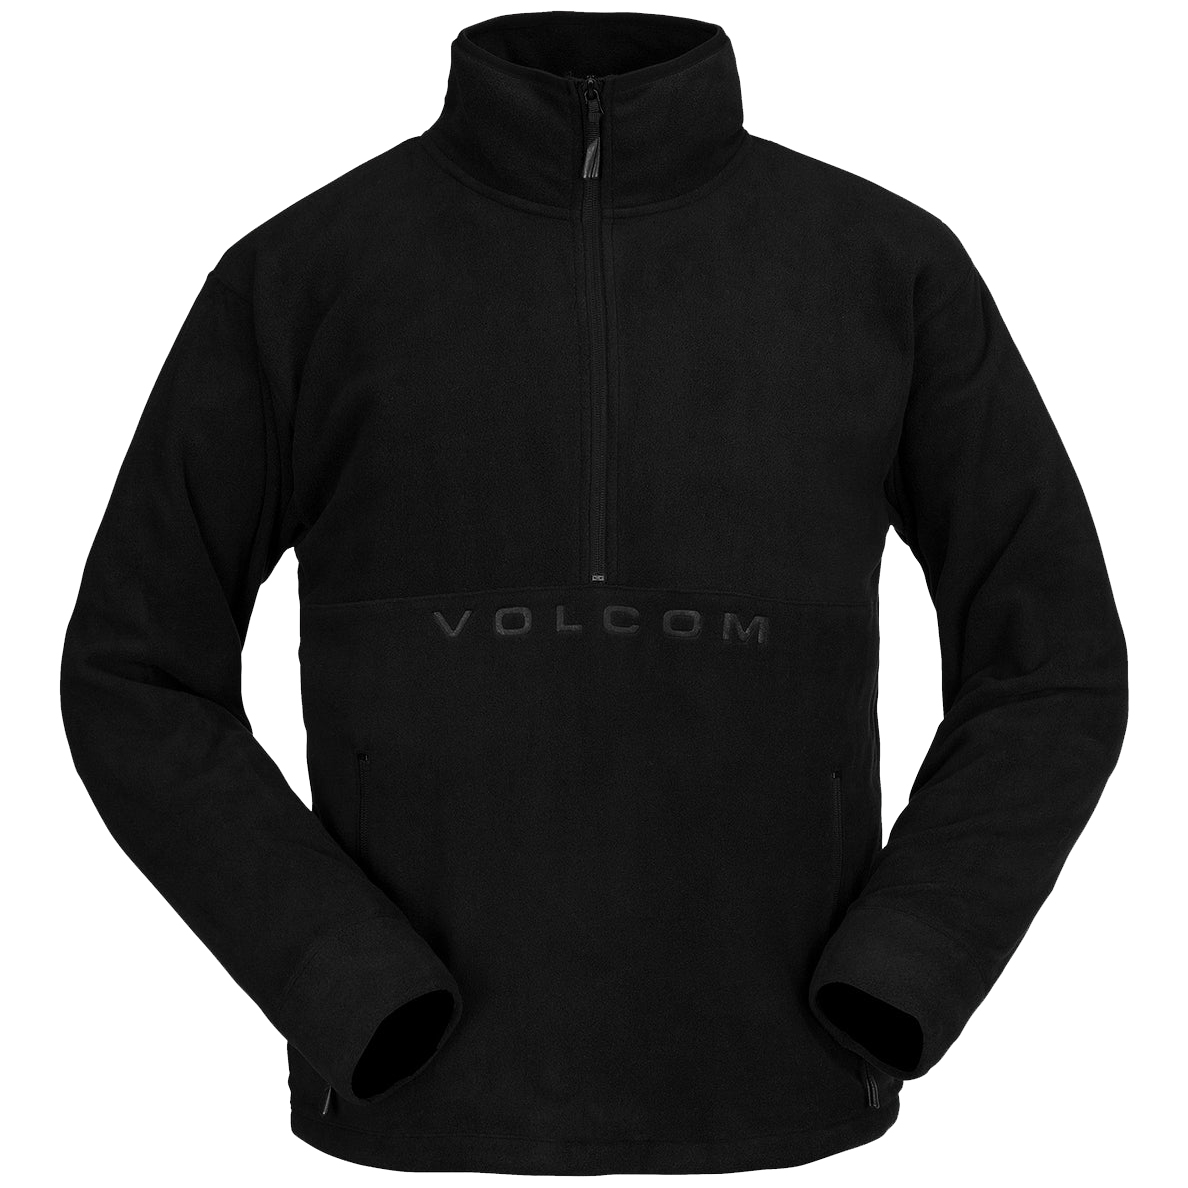 Флисовая кофта Volcom 22-23 V-Science Fleece P/O 1/2 Zip Black кофта вязаная на молнии для девочки